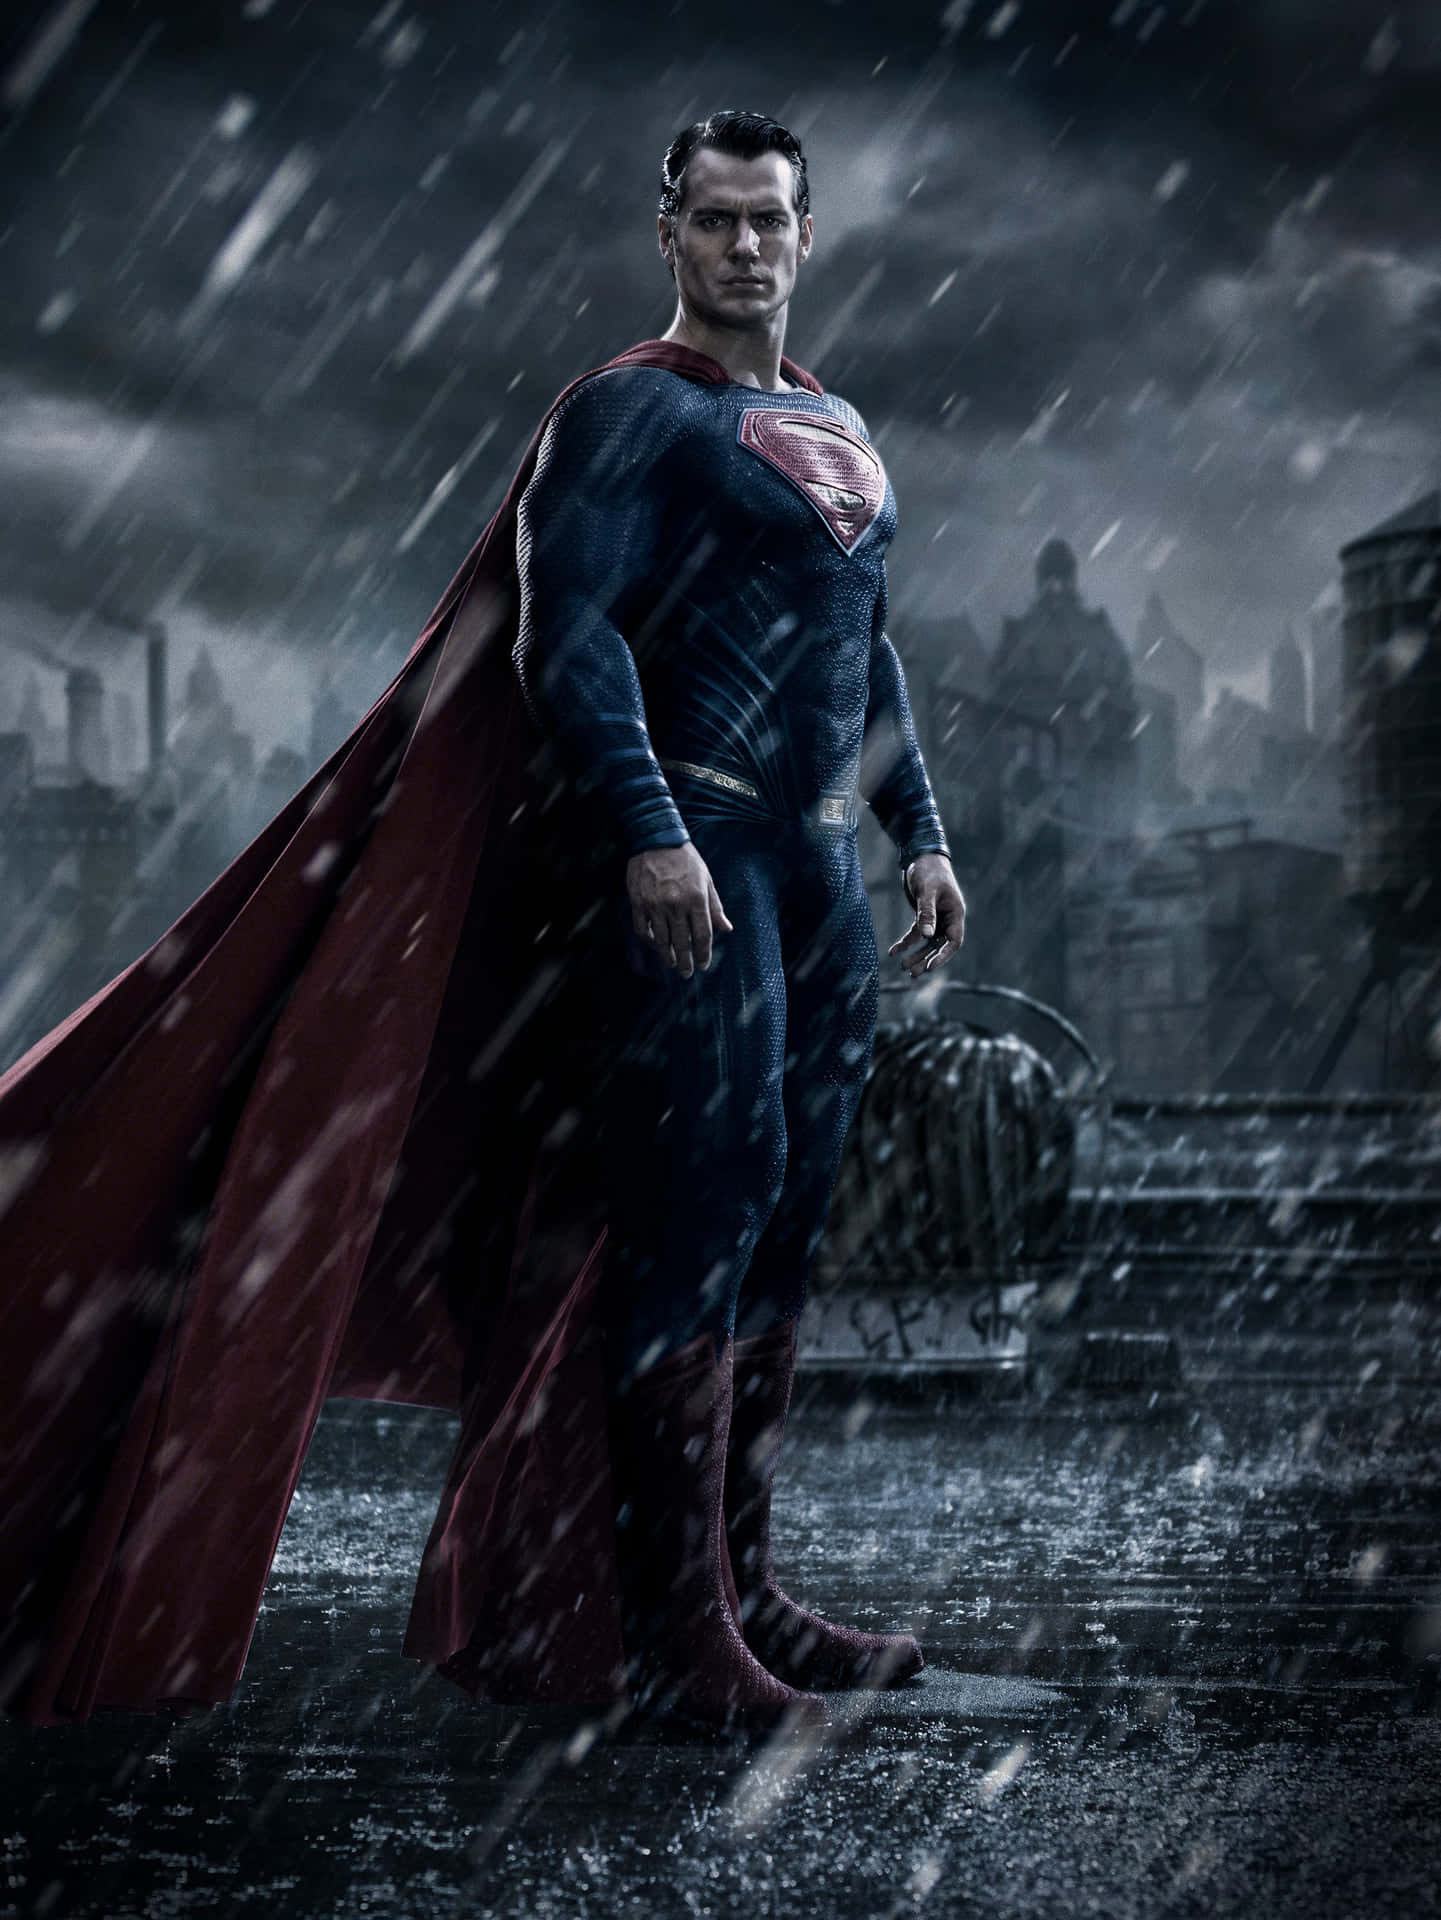 Supermanerhebt Sich In Höchster Vollkommenheit Zur Rettung.